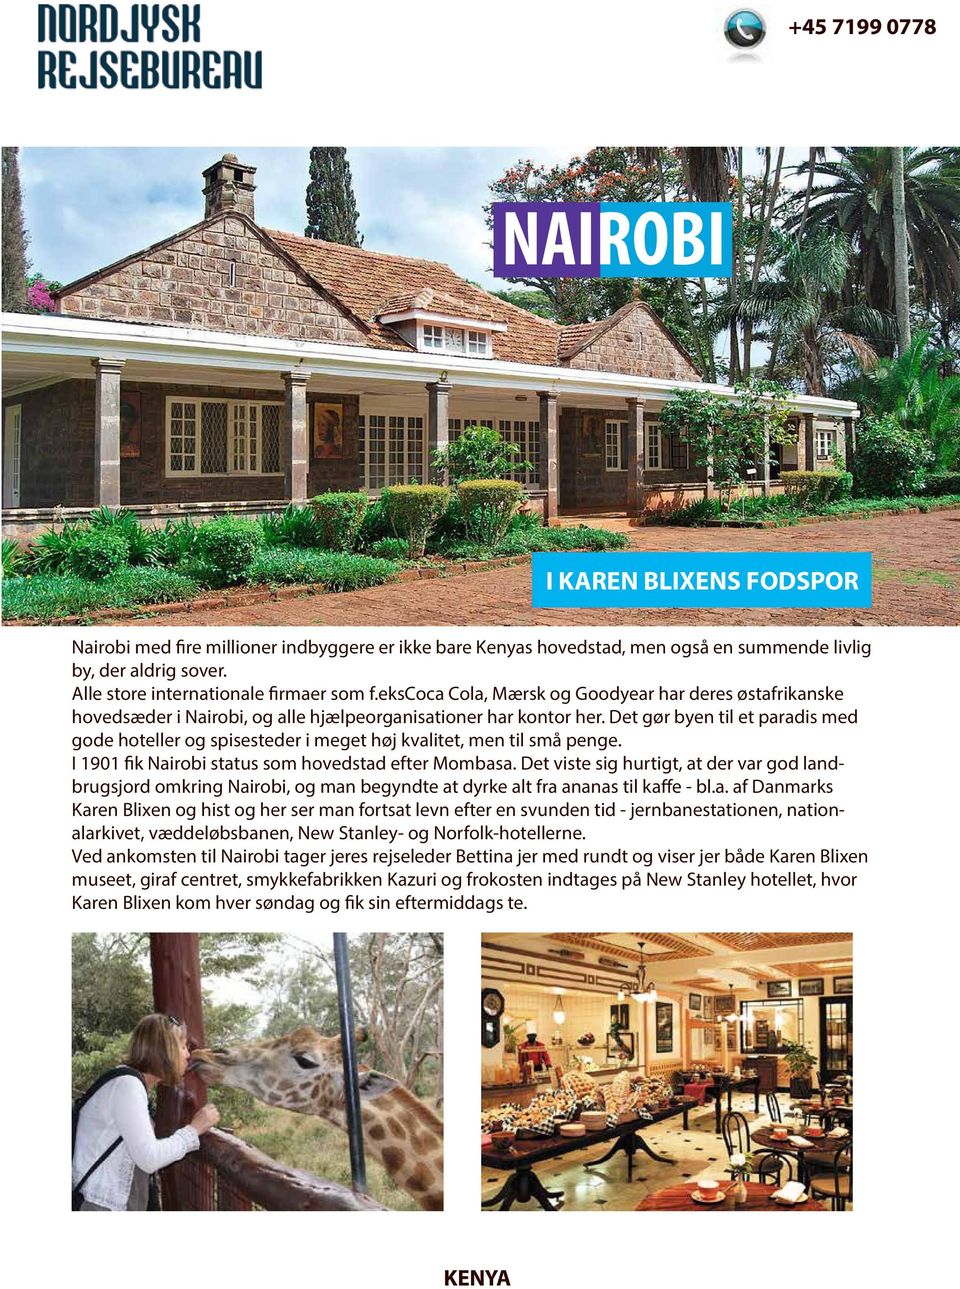 Det gør byen til et paradis med gode hoteller og spisesteder i meget høj kvalitet, men til små penge. I 1901 fik Nairobi status som hovedstad efter Mombasa.